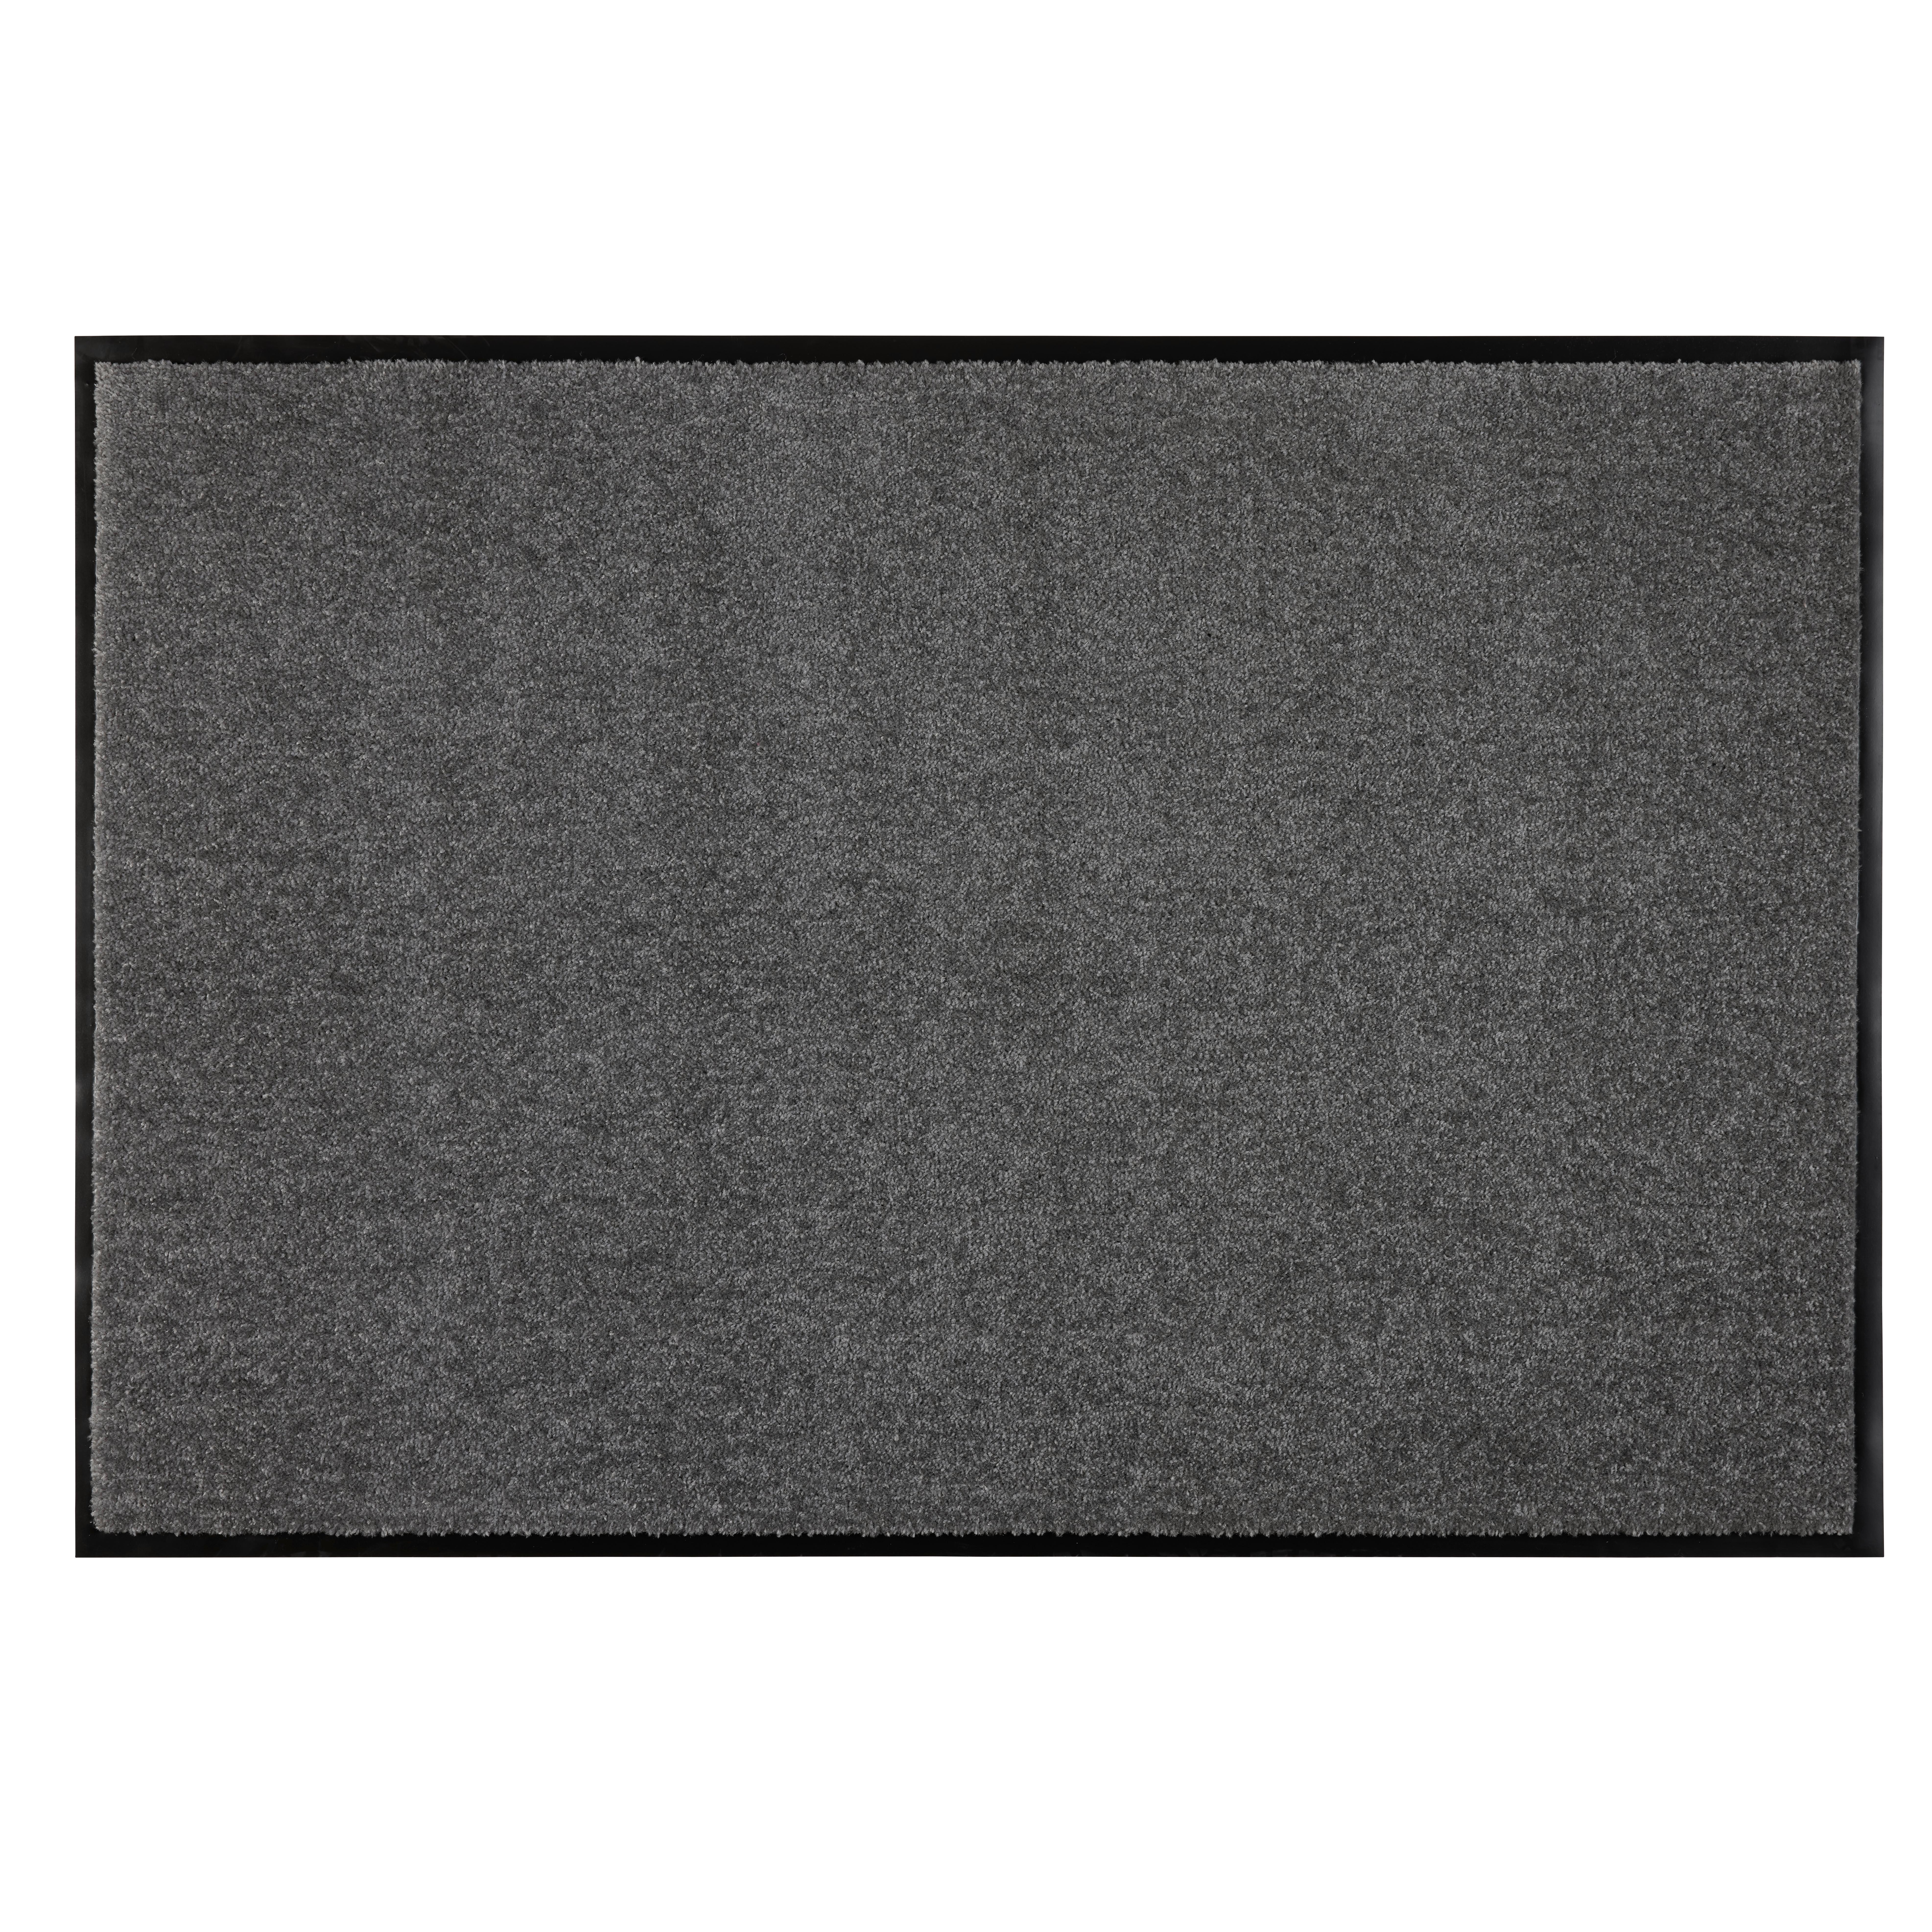 Lábtörlő Eton 80/120cm - Fekete, modern, Textil (80/120cm) - Modern Living